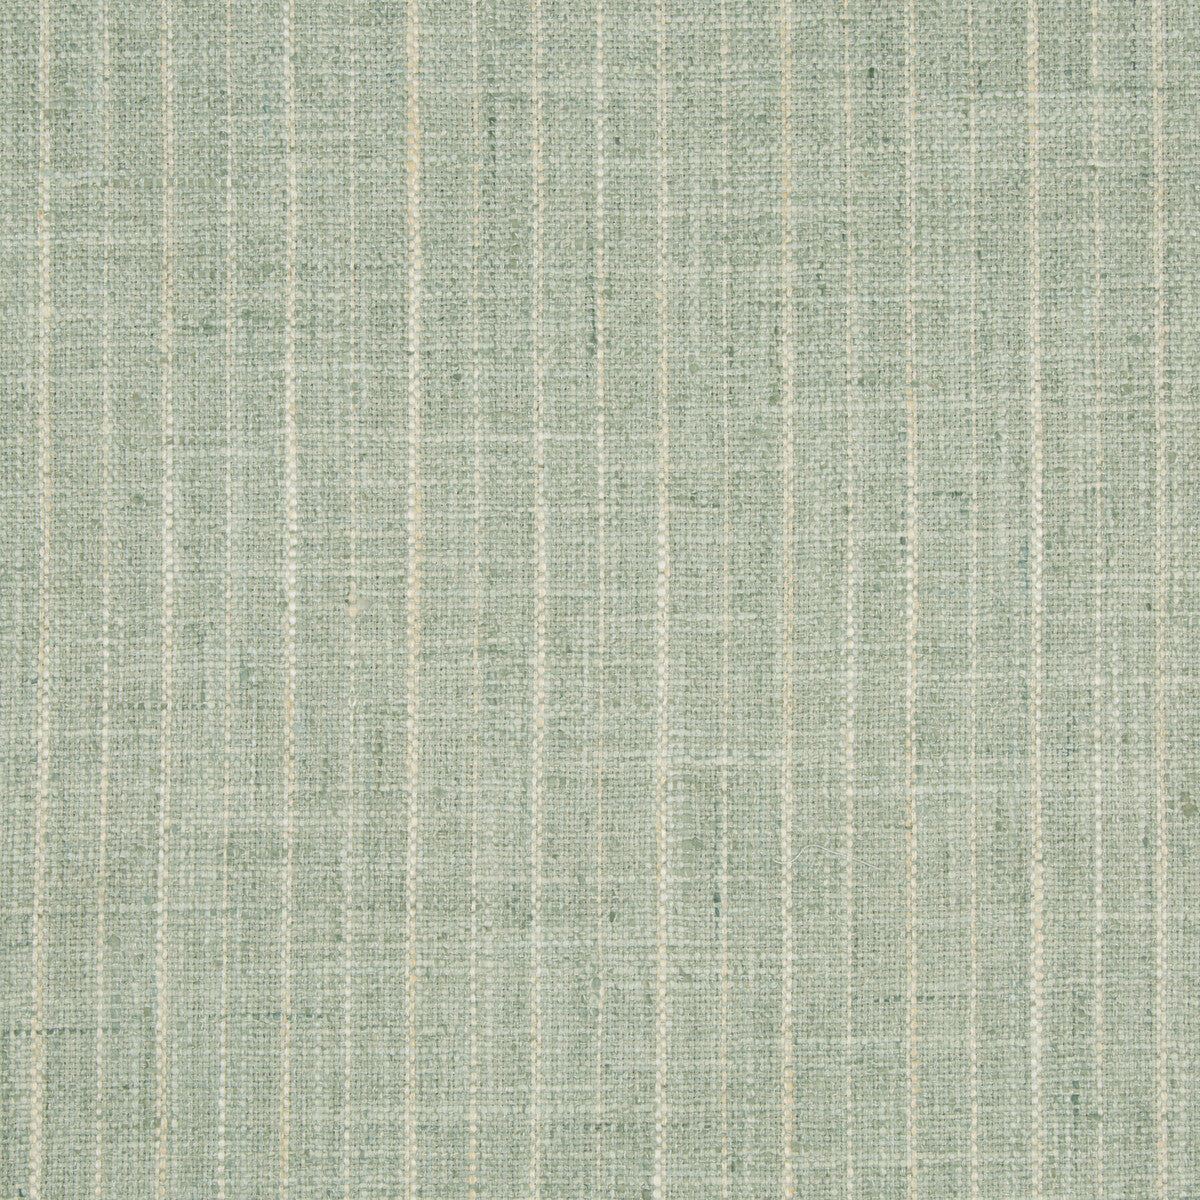 Kravet Basics fabric in 34984-23 color - pattern 34984.23.0 - by Kravet Basics